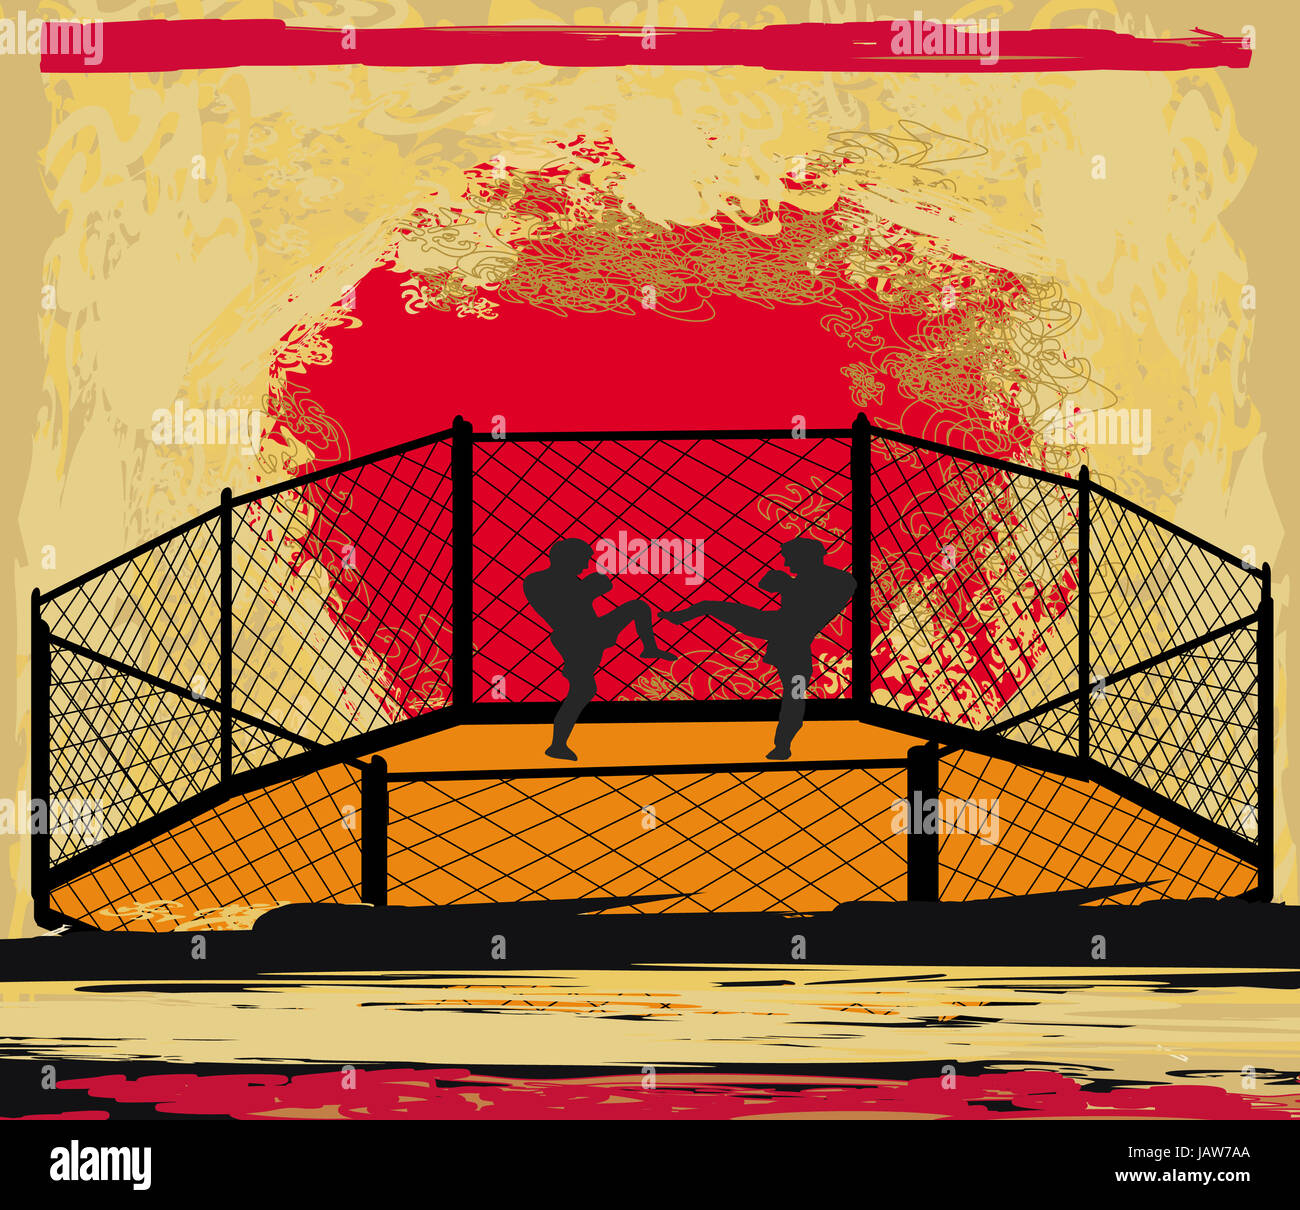 MMA Wettkämpfe, Grunge-Plakat Stockfoto